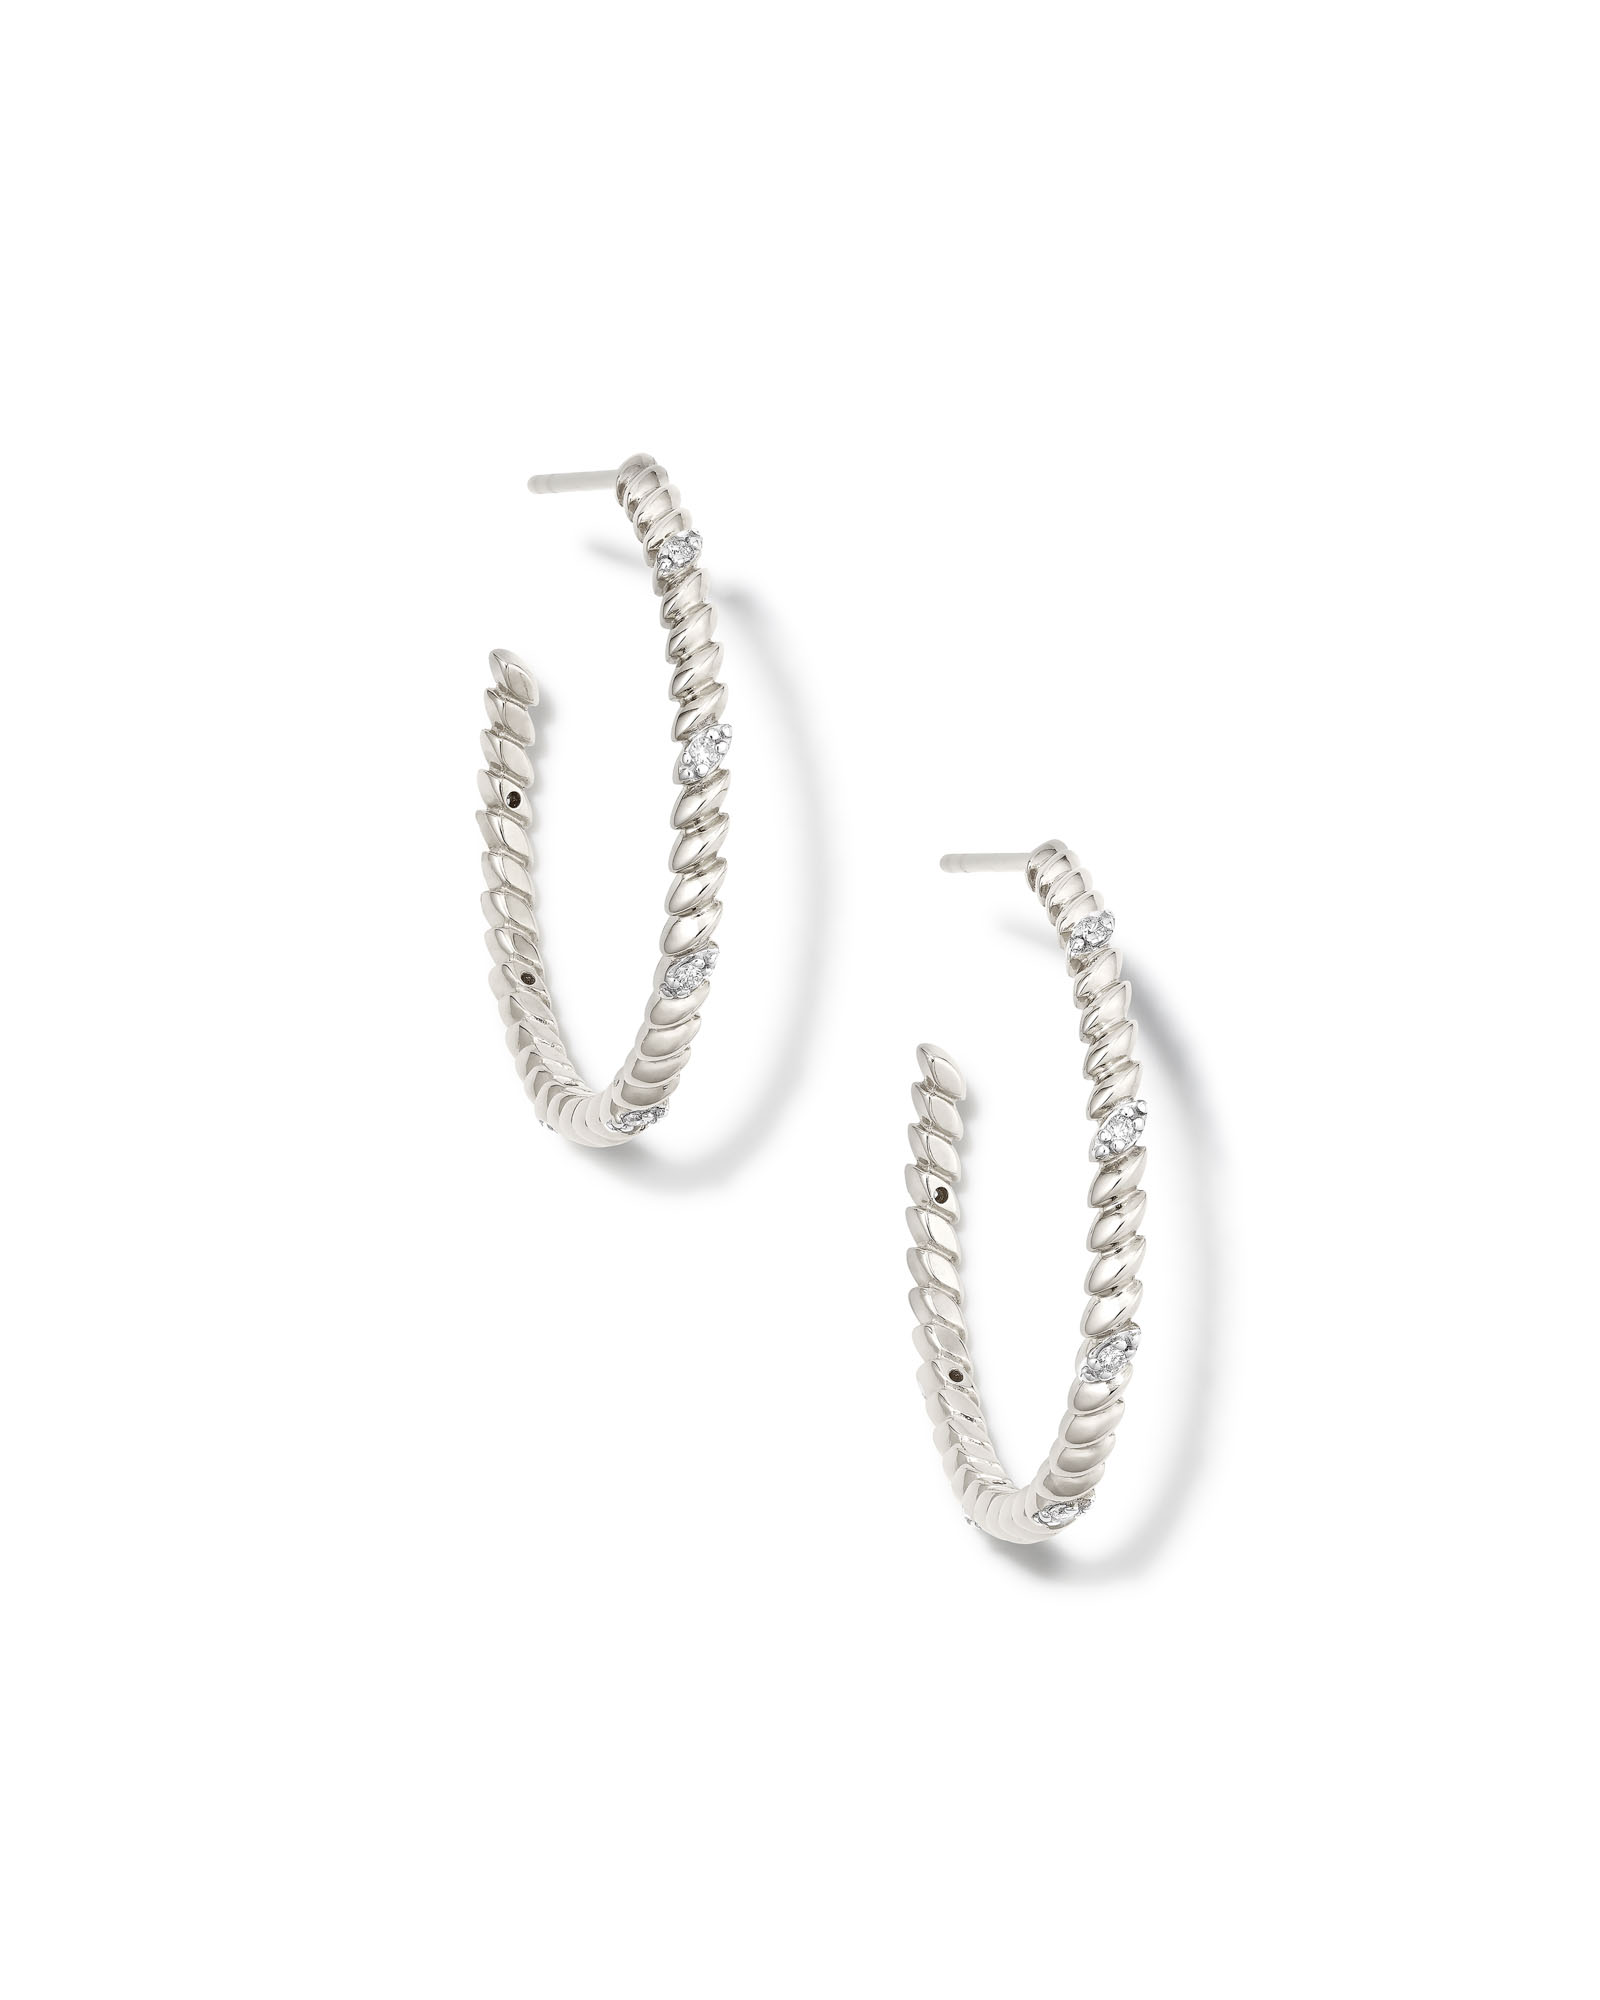 Tyler 14k White Gold Hoop Earrings in White Diamond | Kendra Scott